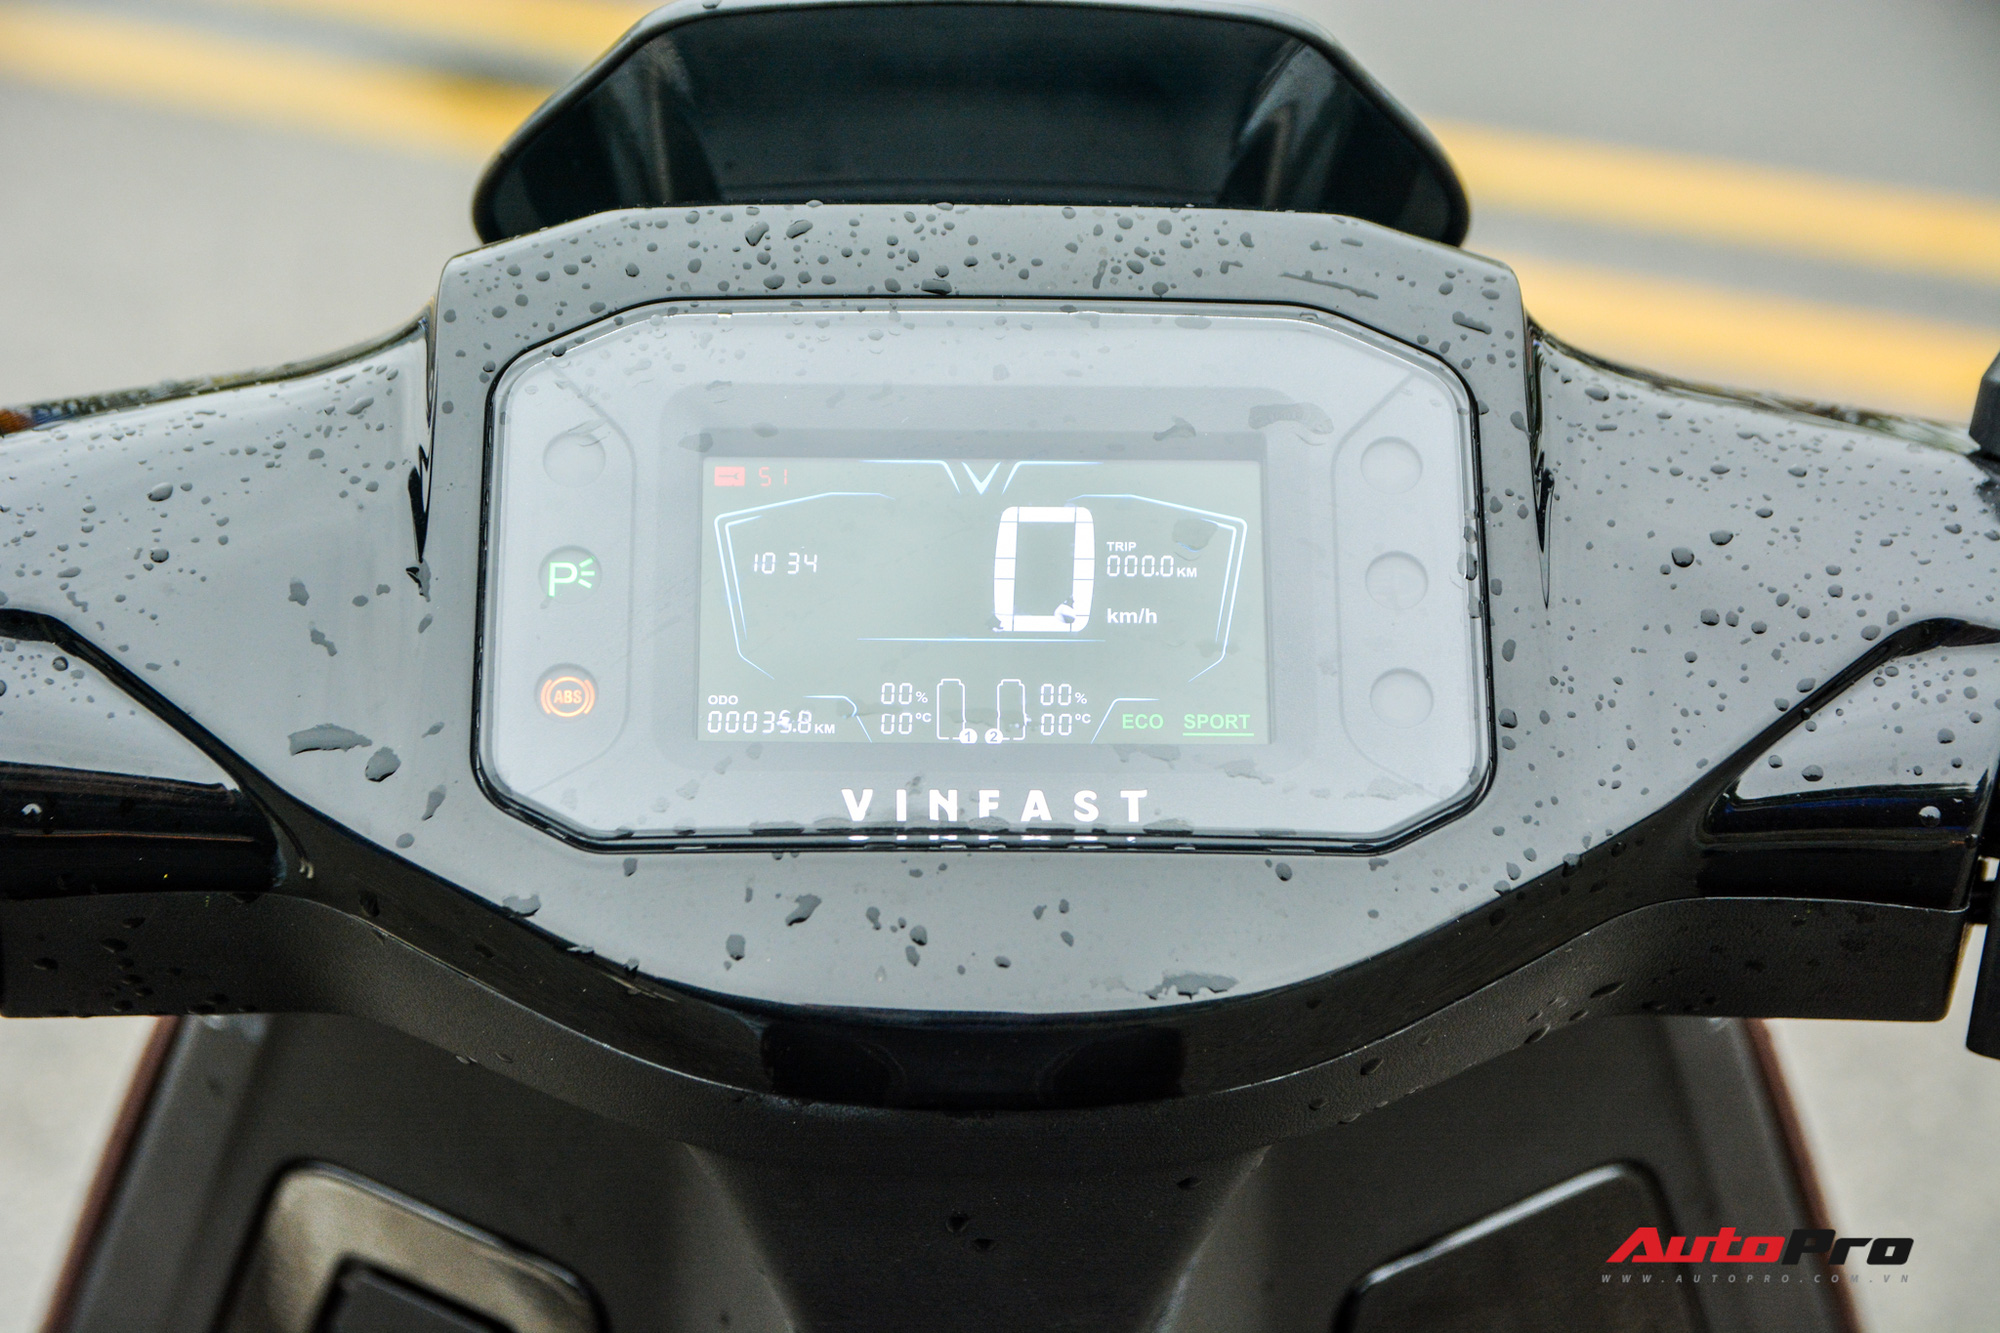 Ra mắt VinFast Theon: Xe máy điện to như Honda SH, có ABS 2 kênh và nhiều công nghệ ‘xịn xò’ khác - Ảnh 5.